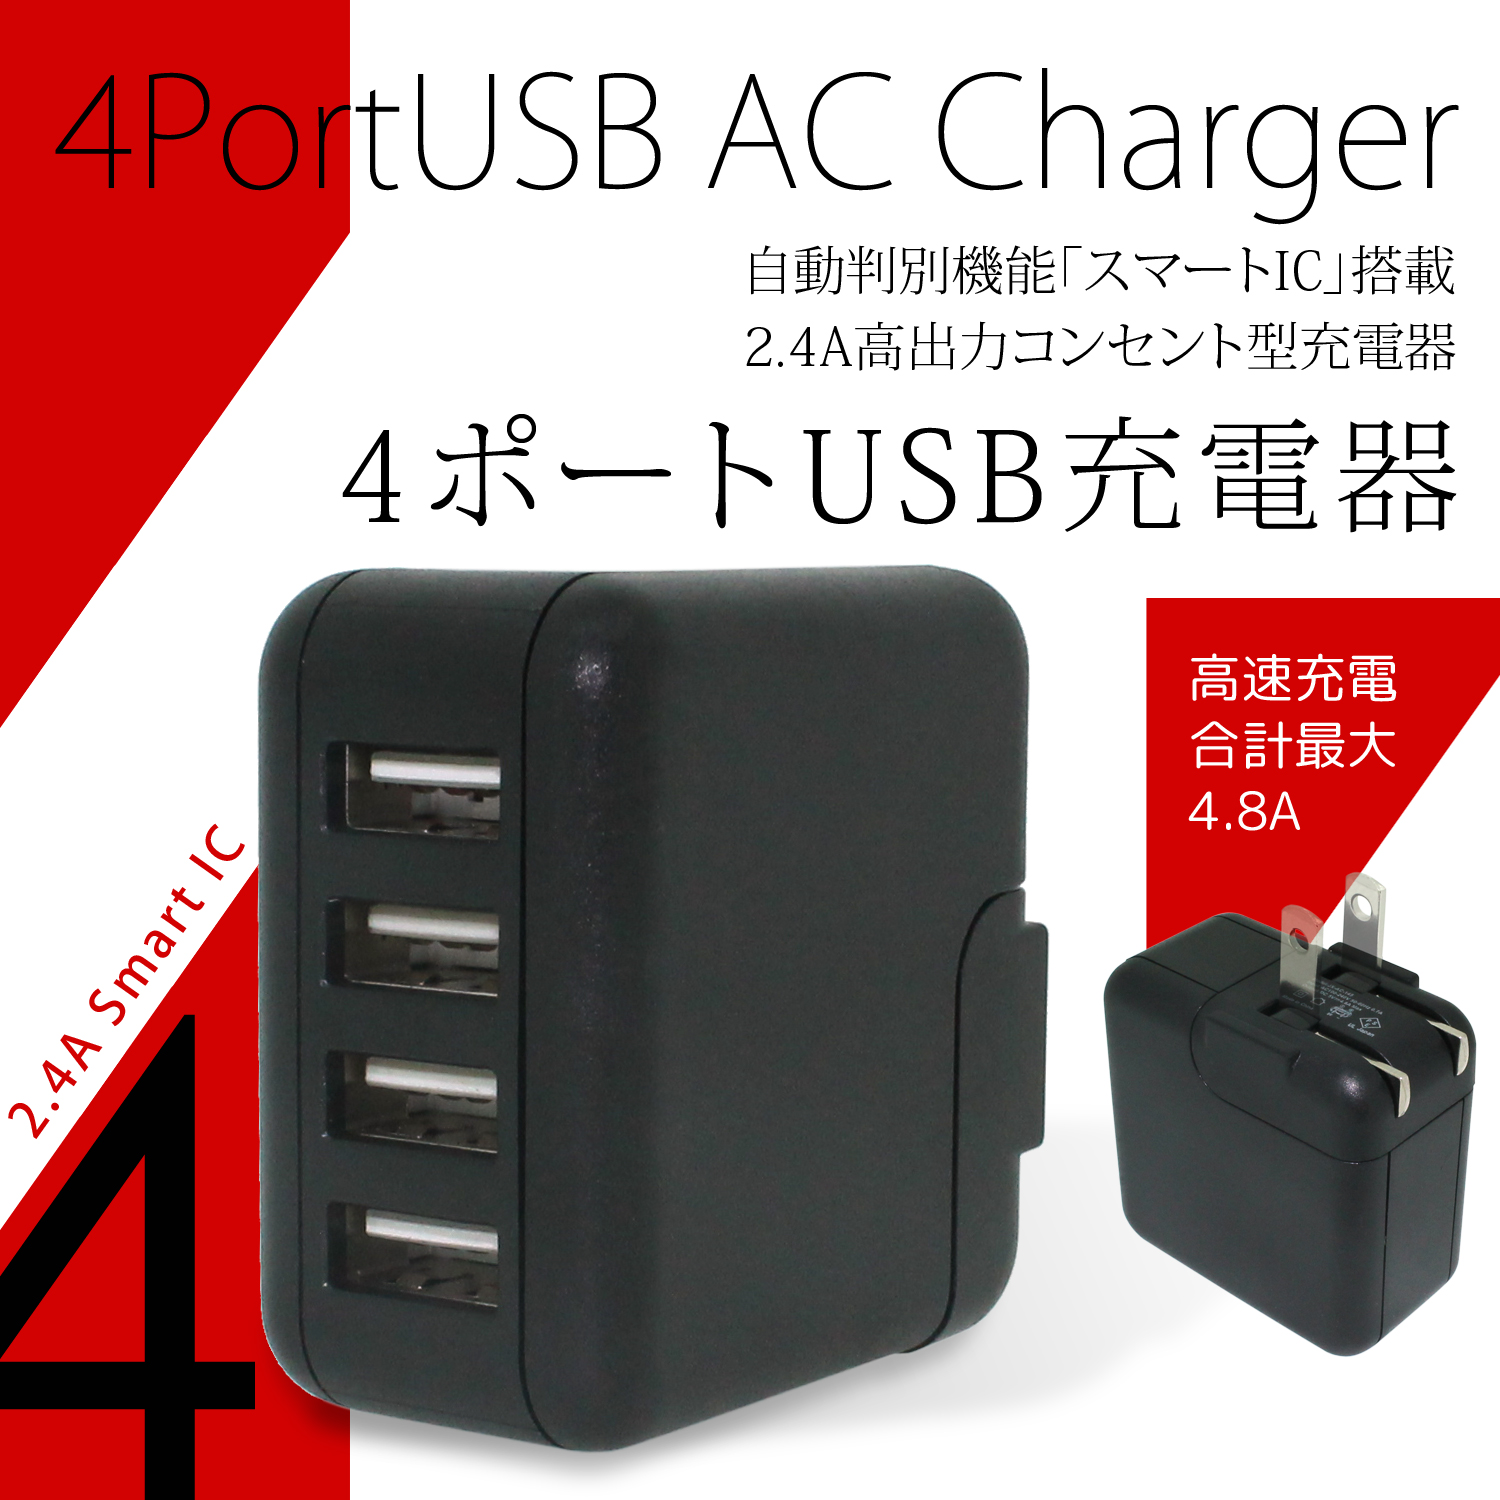 4ポート USB 充電器 AC チャージャー スマートIC 搭載 2.4A コンセント 最大 4.8A 24W 4台 高速充電 急速充電 海外規格 コンパクト PSE